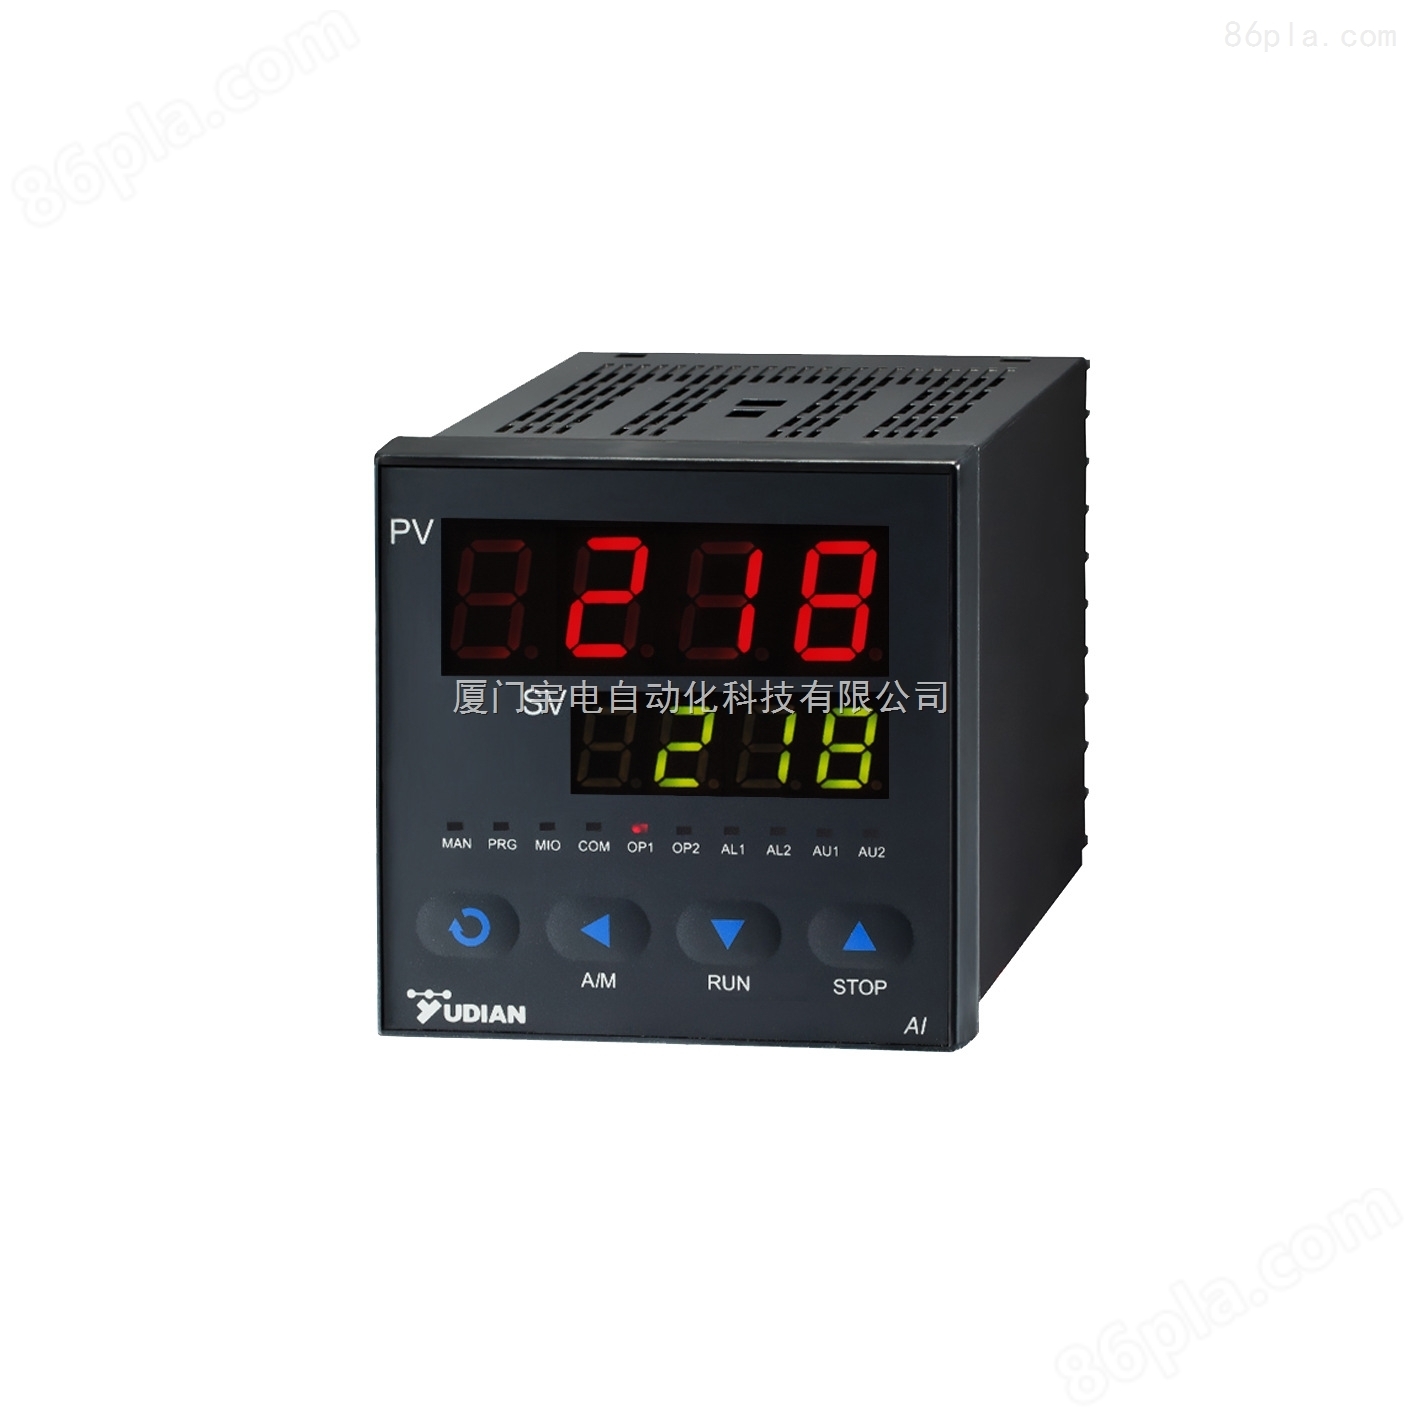 【*】厦门宇电AI-218L温控器 温度控制器 智能温控器